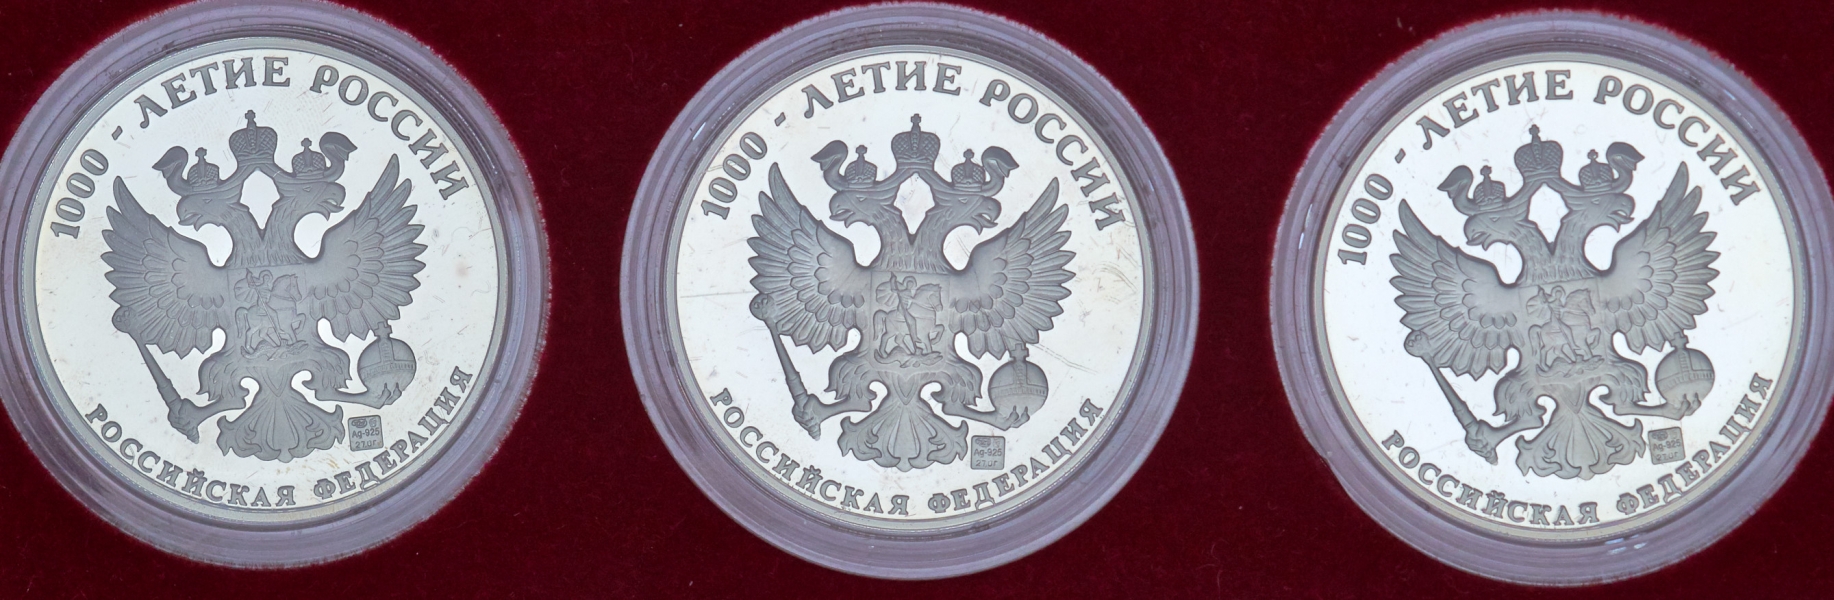 Набор из 3-х памятных медалей "Столичный град Москва" (в п/у)